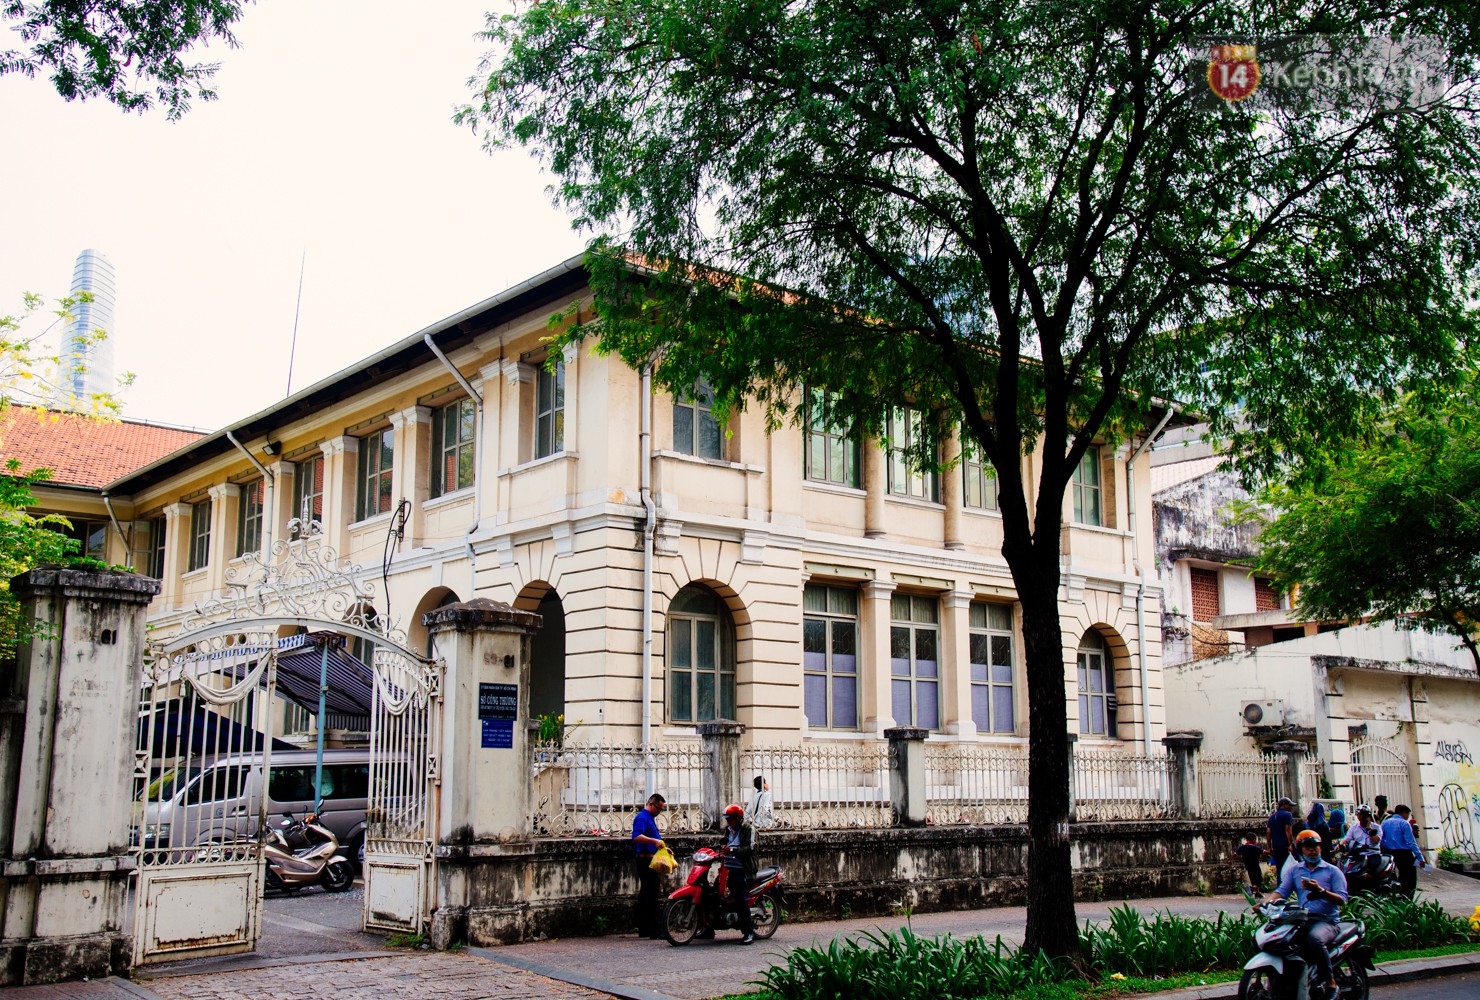 Người Sài Gòn bày tỏ tiếc nuối trước đề án tháo dỡ Dinh Thượng Thơ 130 năm tuổi để nâng cấp trụ sở UBND và HĐND TP.HCM - Ảnh 6.